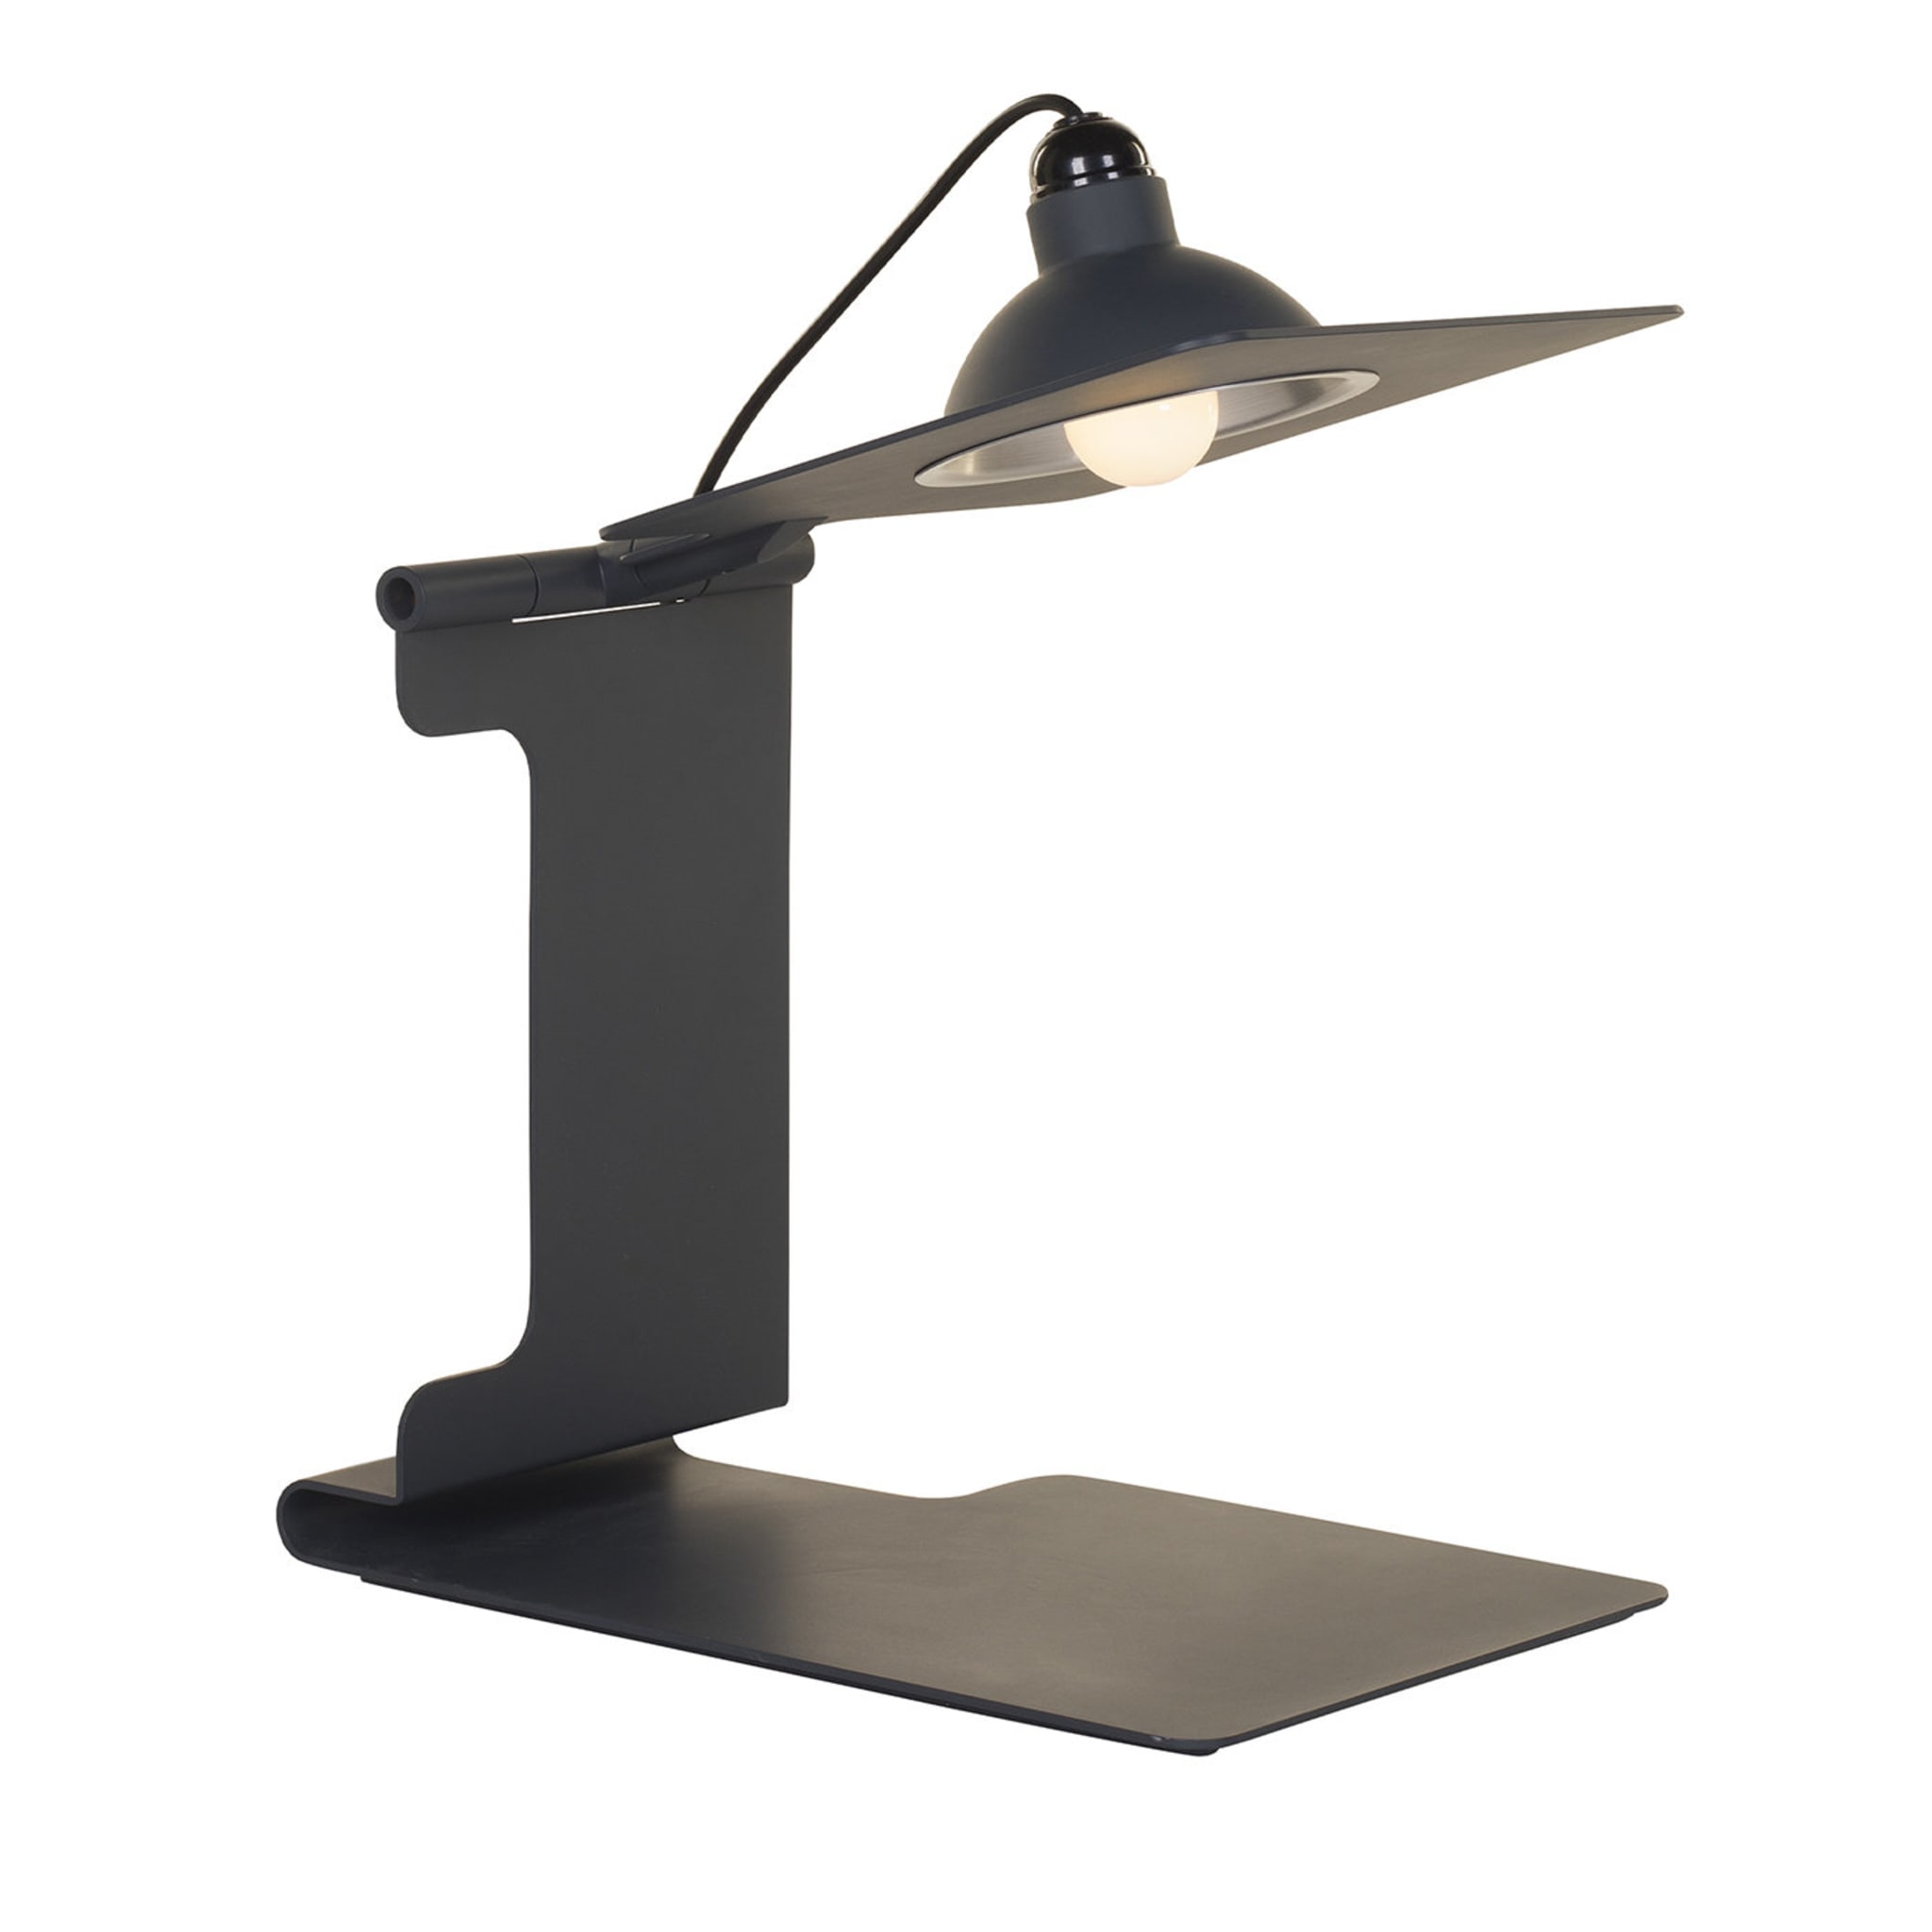 Scuderia Table Lamp by Studio Caccia Dominioni-Zucca & Associati - Main view